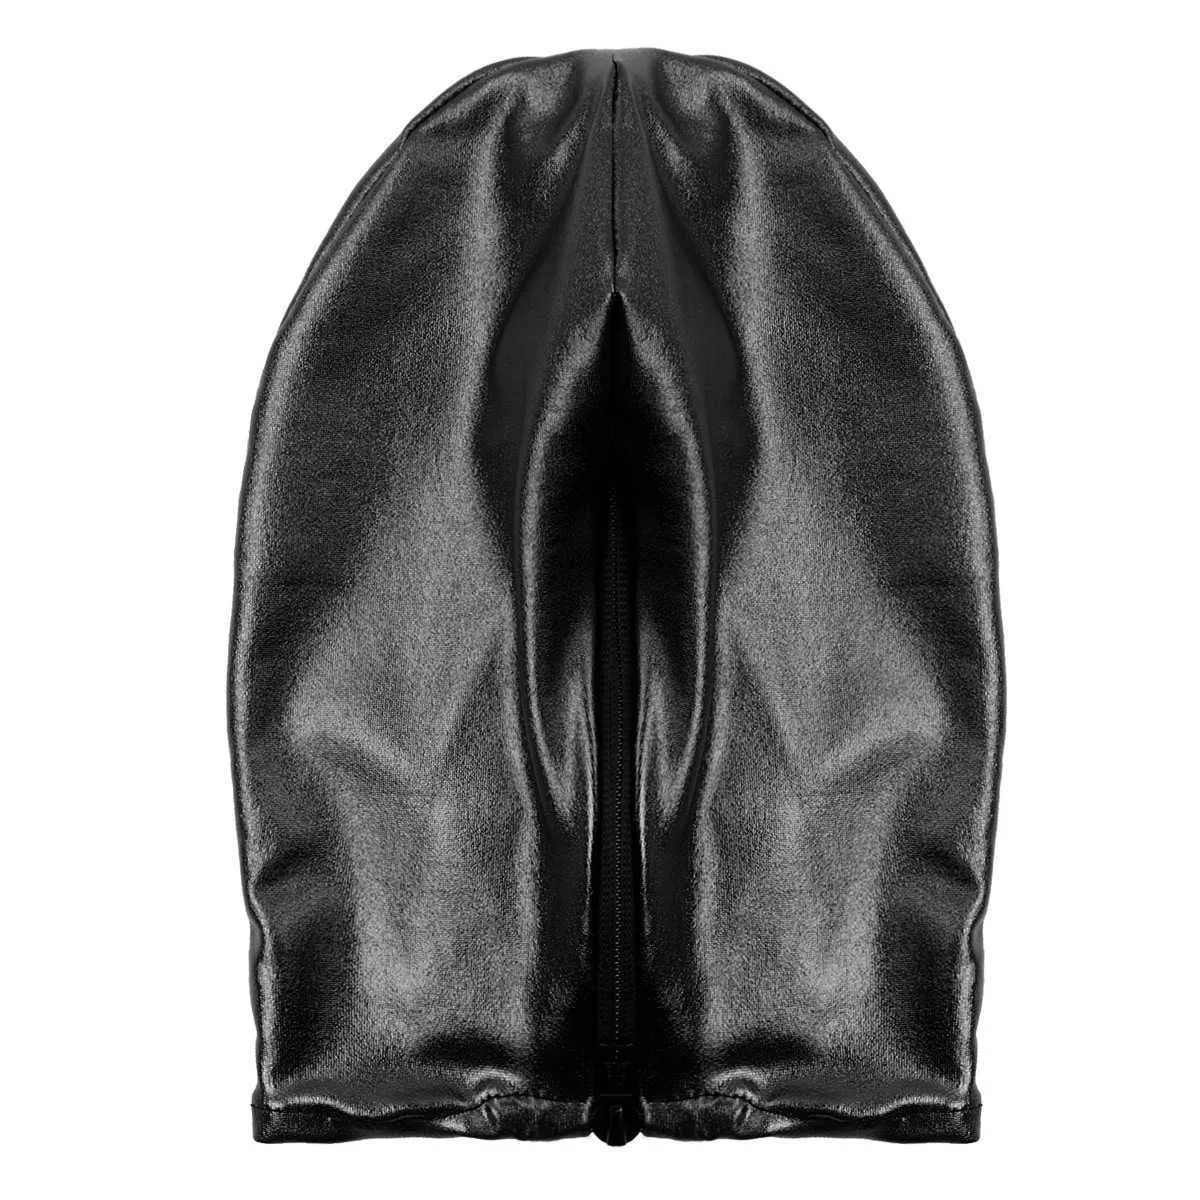 Sexy Unisexe Men Femmes Cosplay Face Mask Hood pour le jeu de rôle Costume Latex brillant métallique ouverte de bouche ouverte Headgear Full Face Mask Q02793527